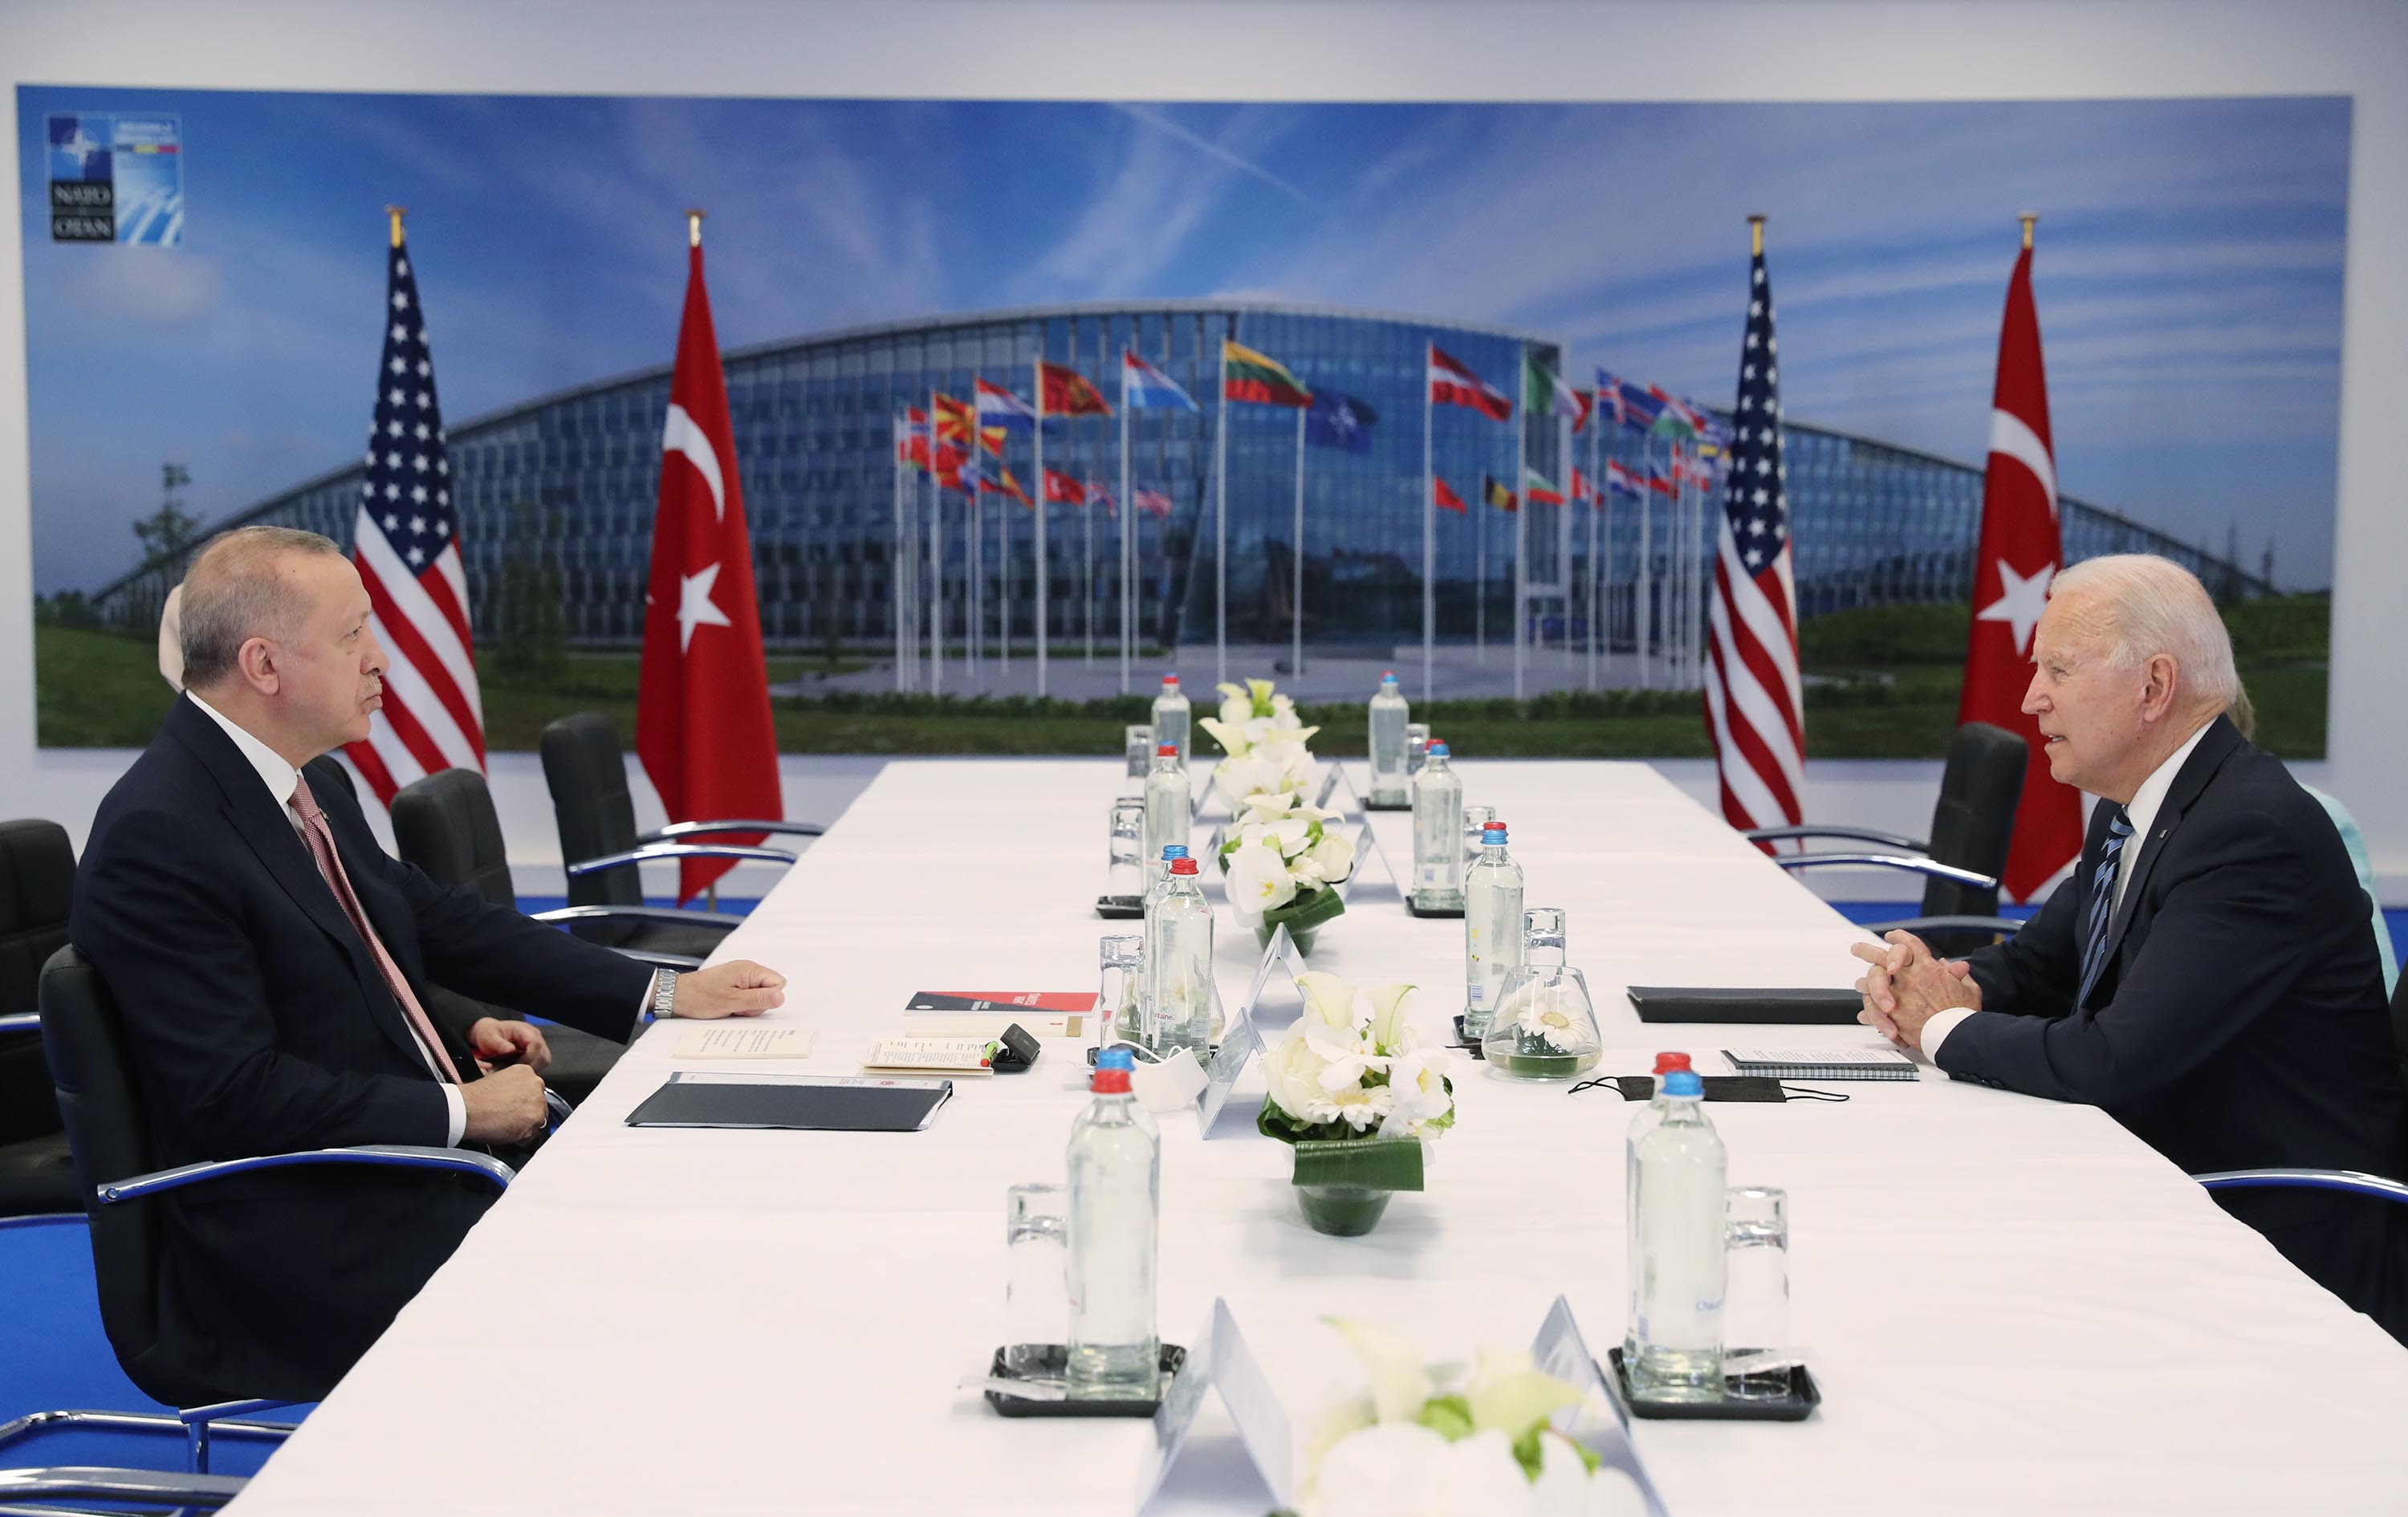 Turkish Presidency/Murat Cetinmuhurdar/Handout/Anadolu Agency/Getty Images